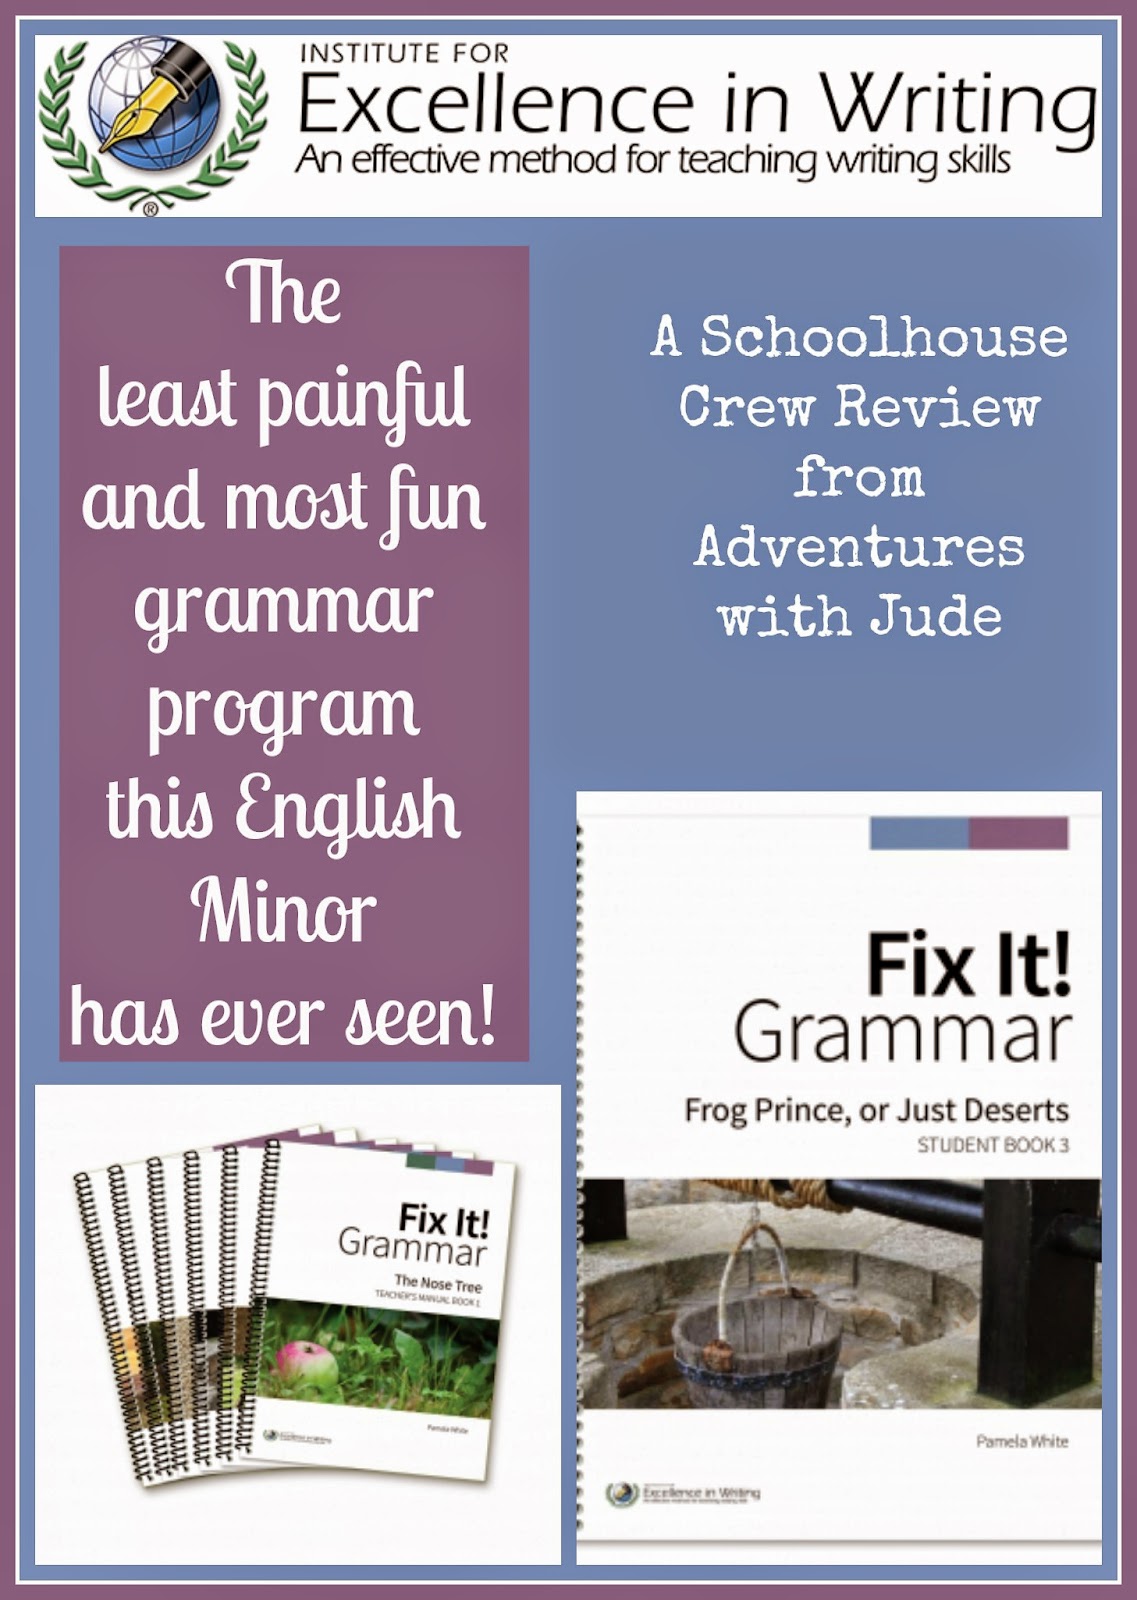 IEW Fix It Grammar Review  #grammar #writing #IEW